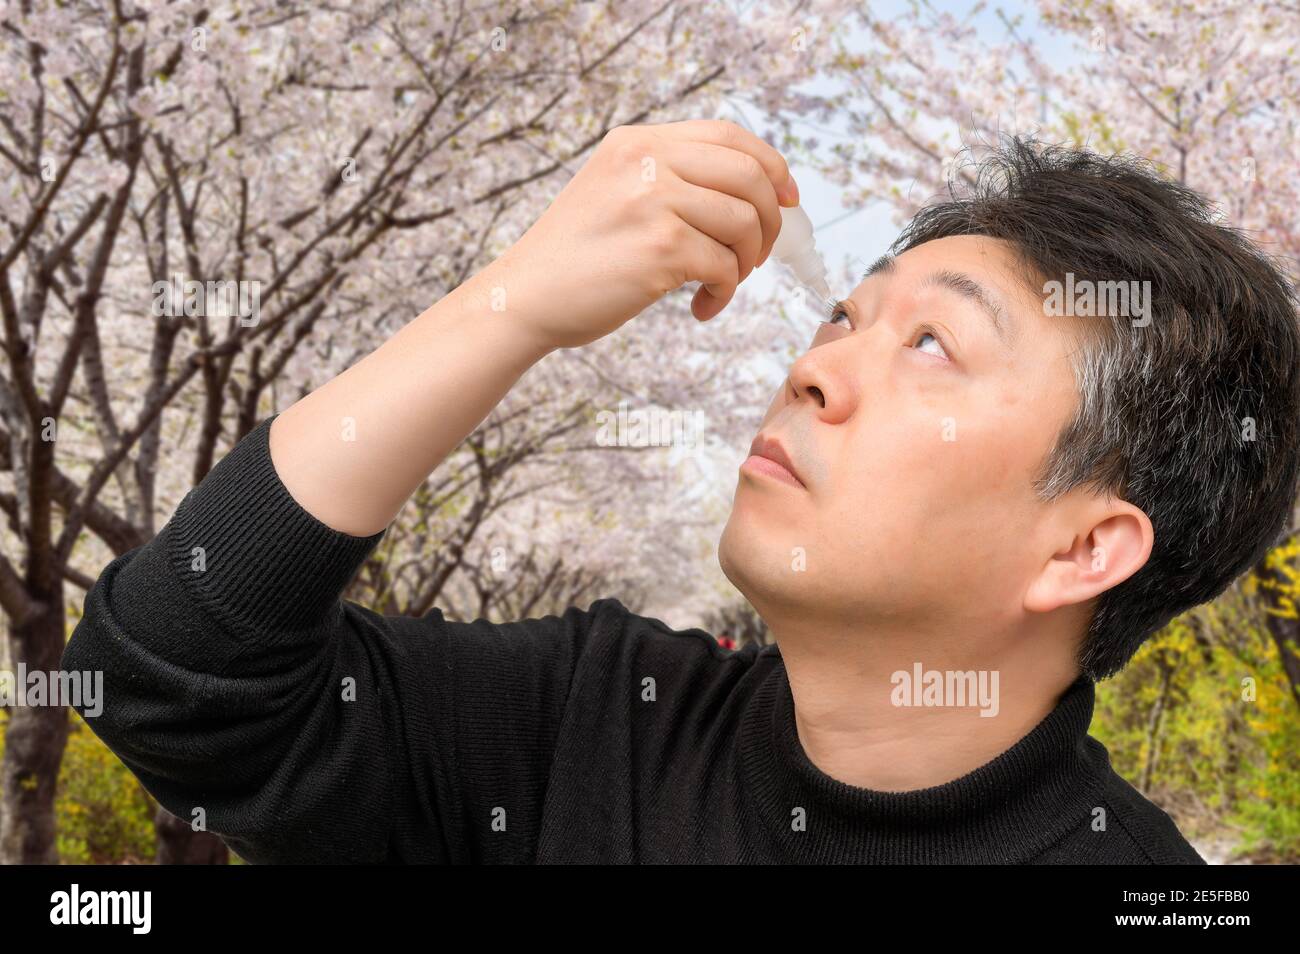 L'uomo asiatico di mezza età che usa gocce di occhio vicino agli alberi in fiore. Concetto di allergia. Foto Stock